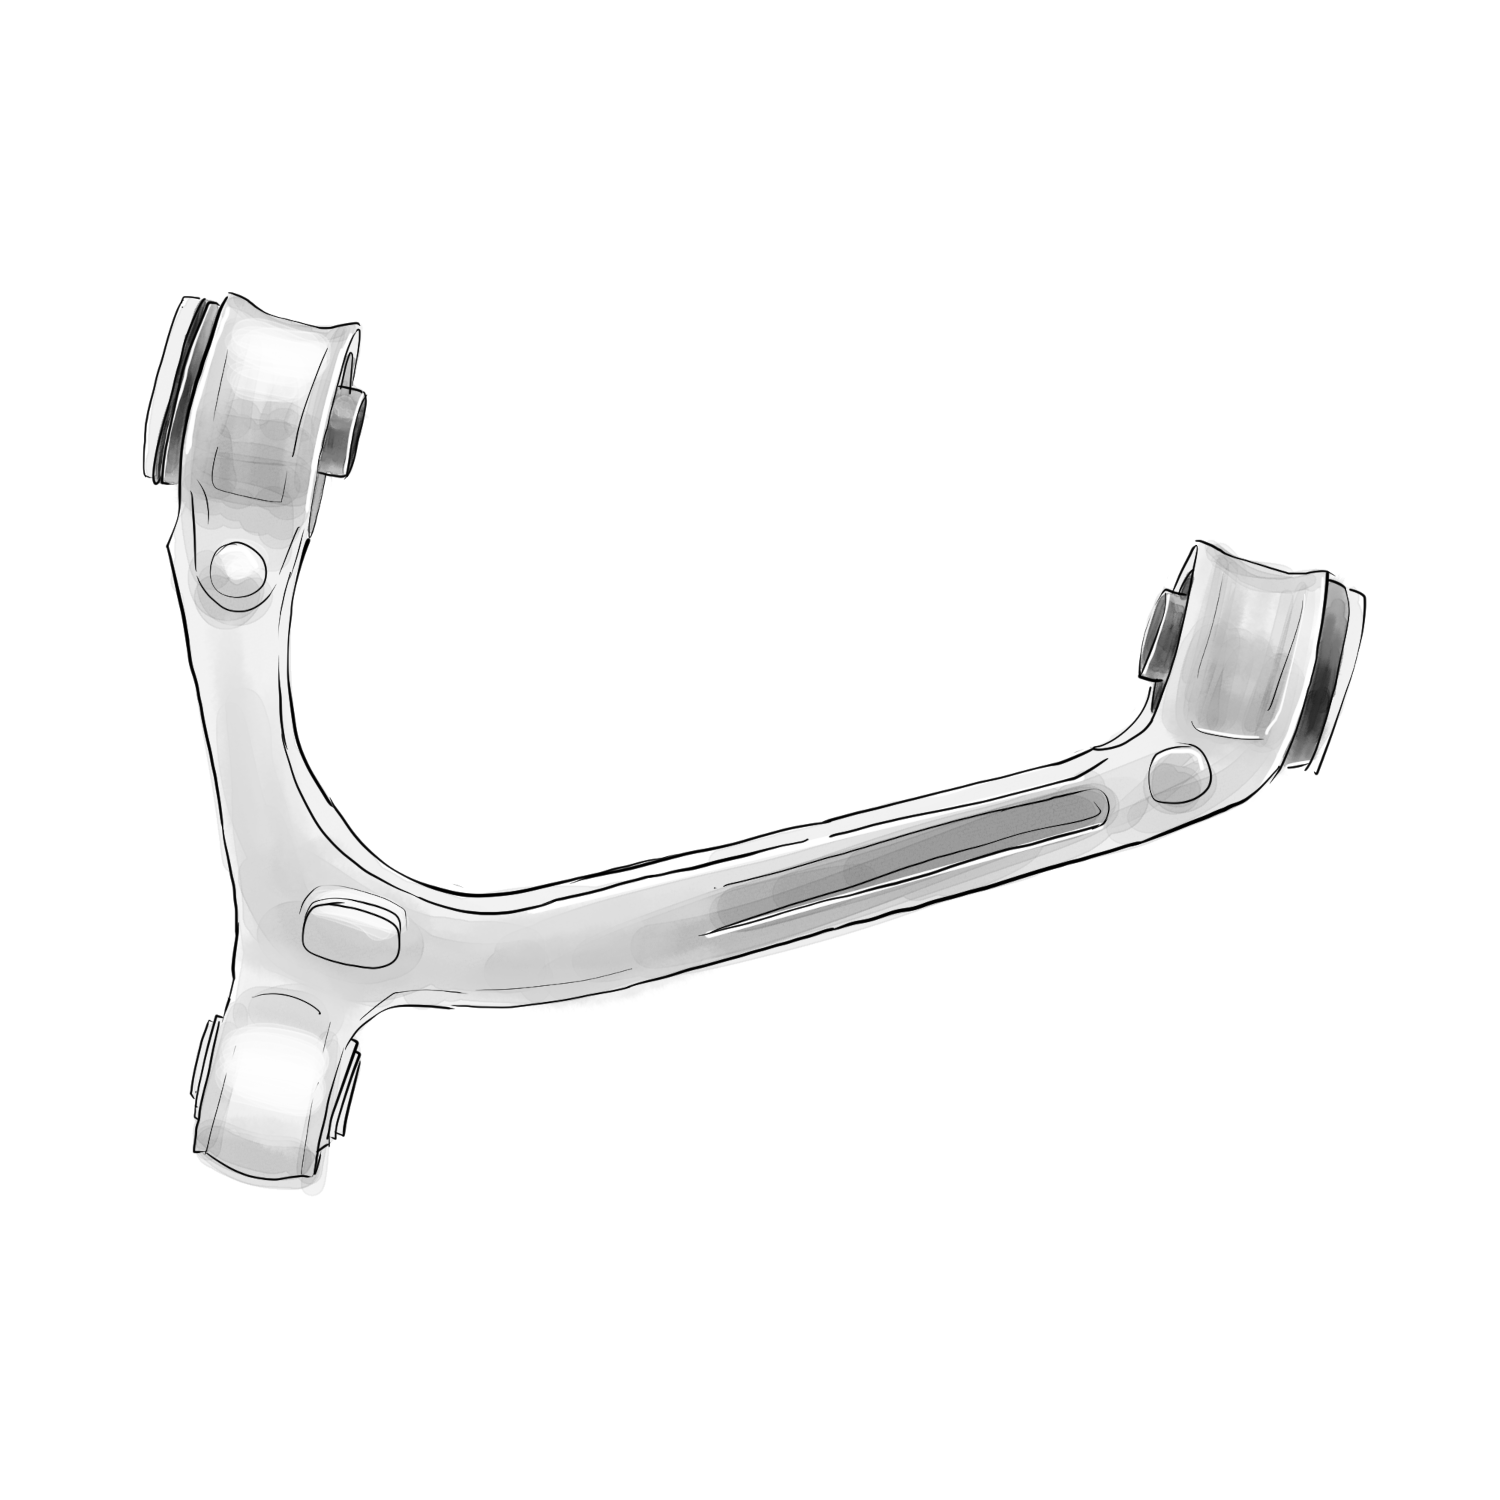  Product image 1 of the product “Wishbone aluminum ”